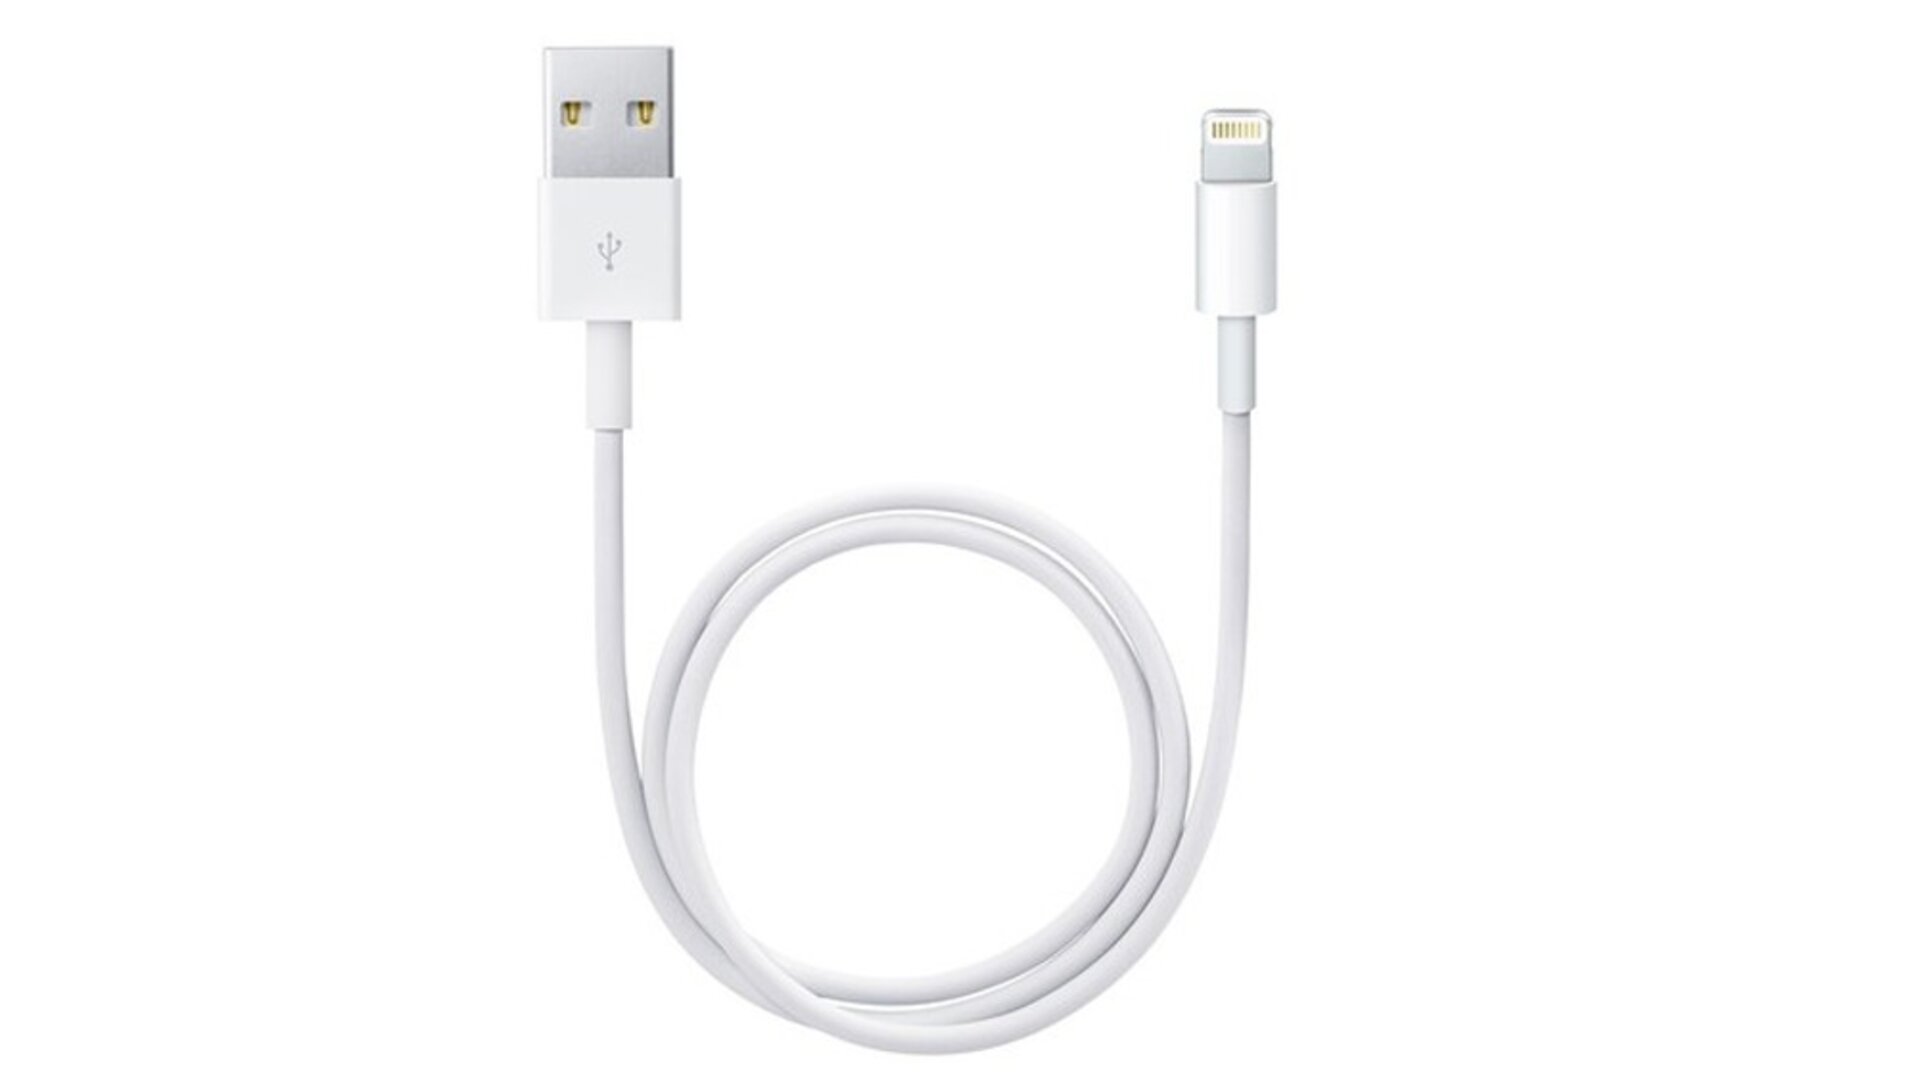 Lightning to USB Cable დამტენი usb კაბელი (1მ)